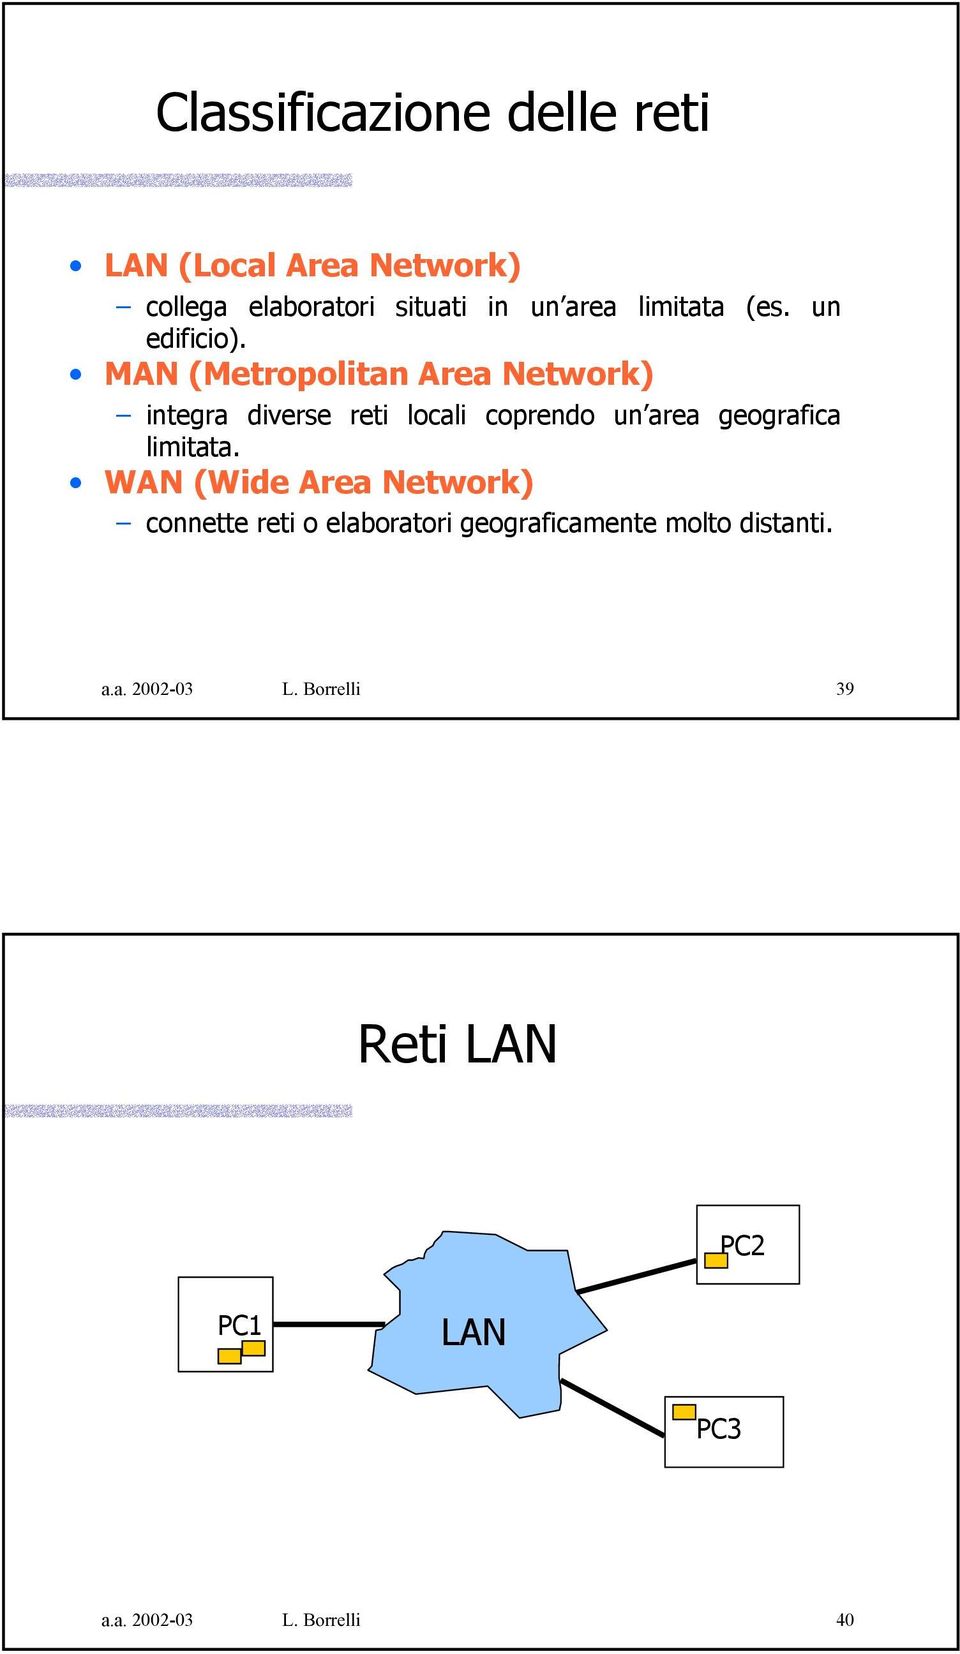 MAN (Metropolitan Area Network) integra diverse reti locali coprendo un area geografica